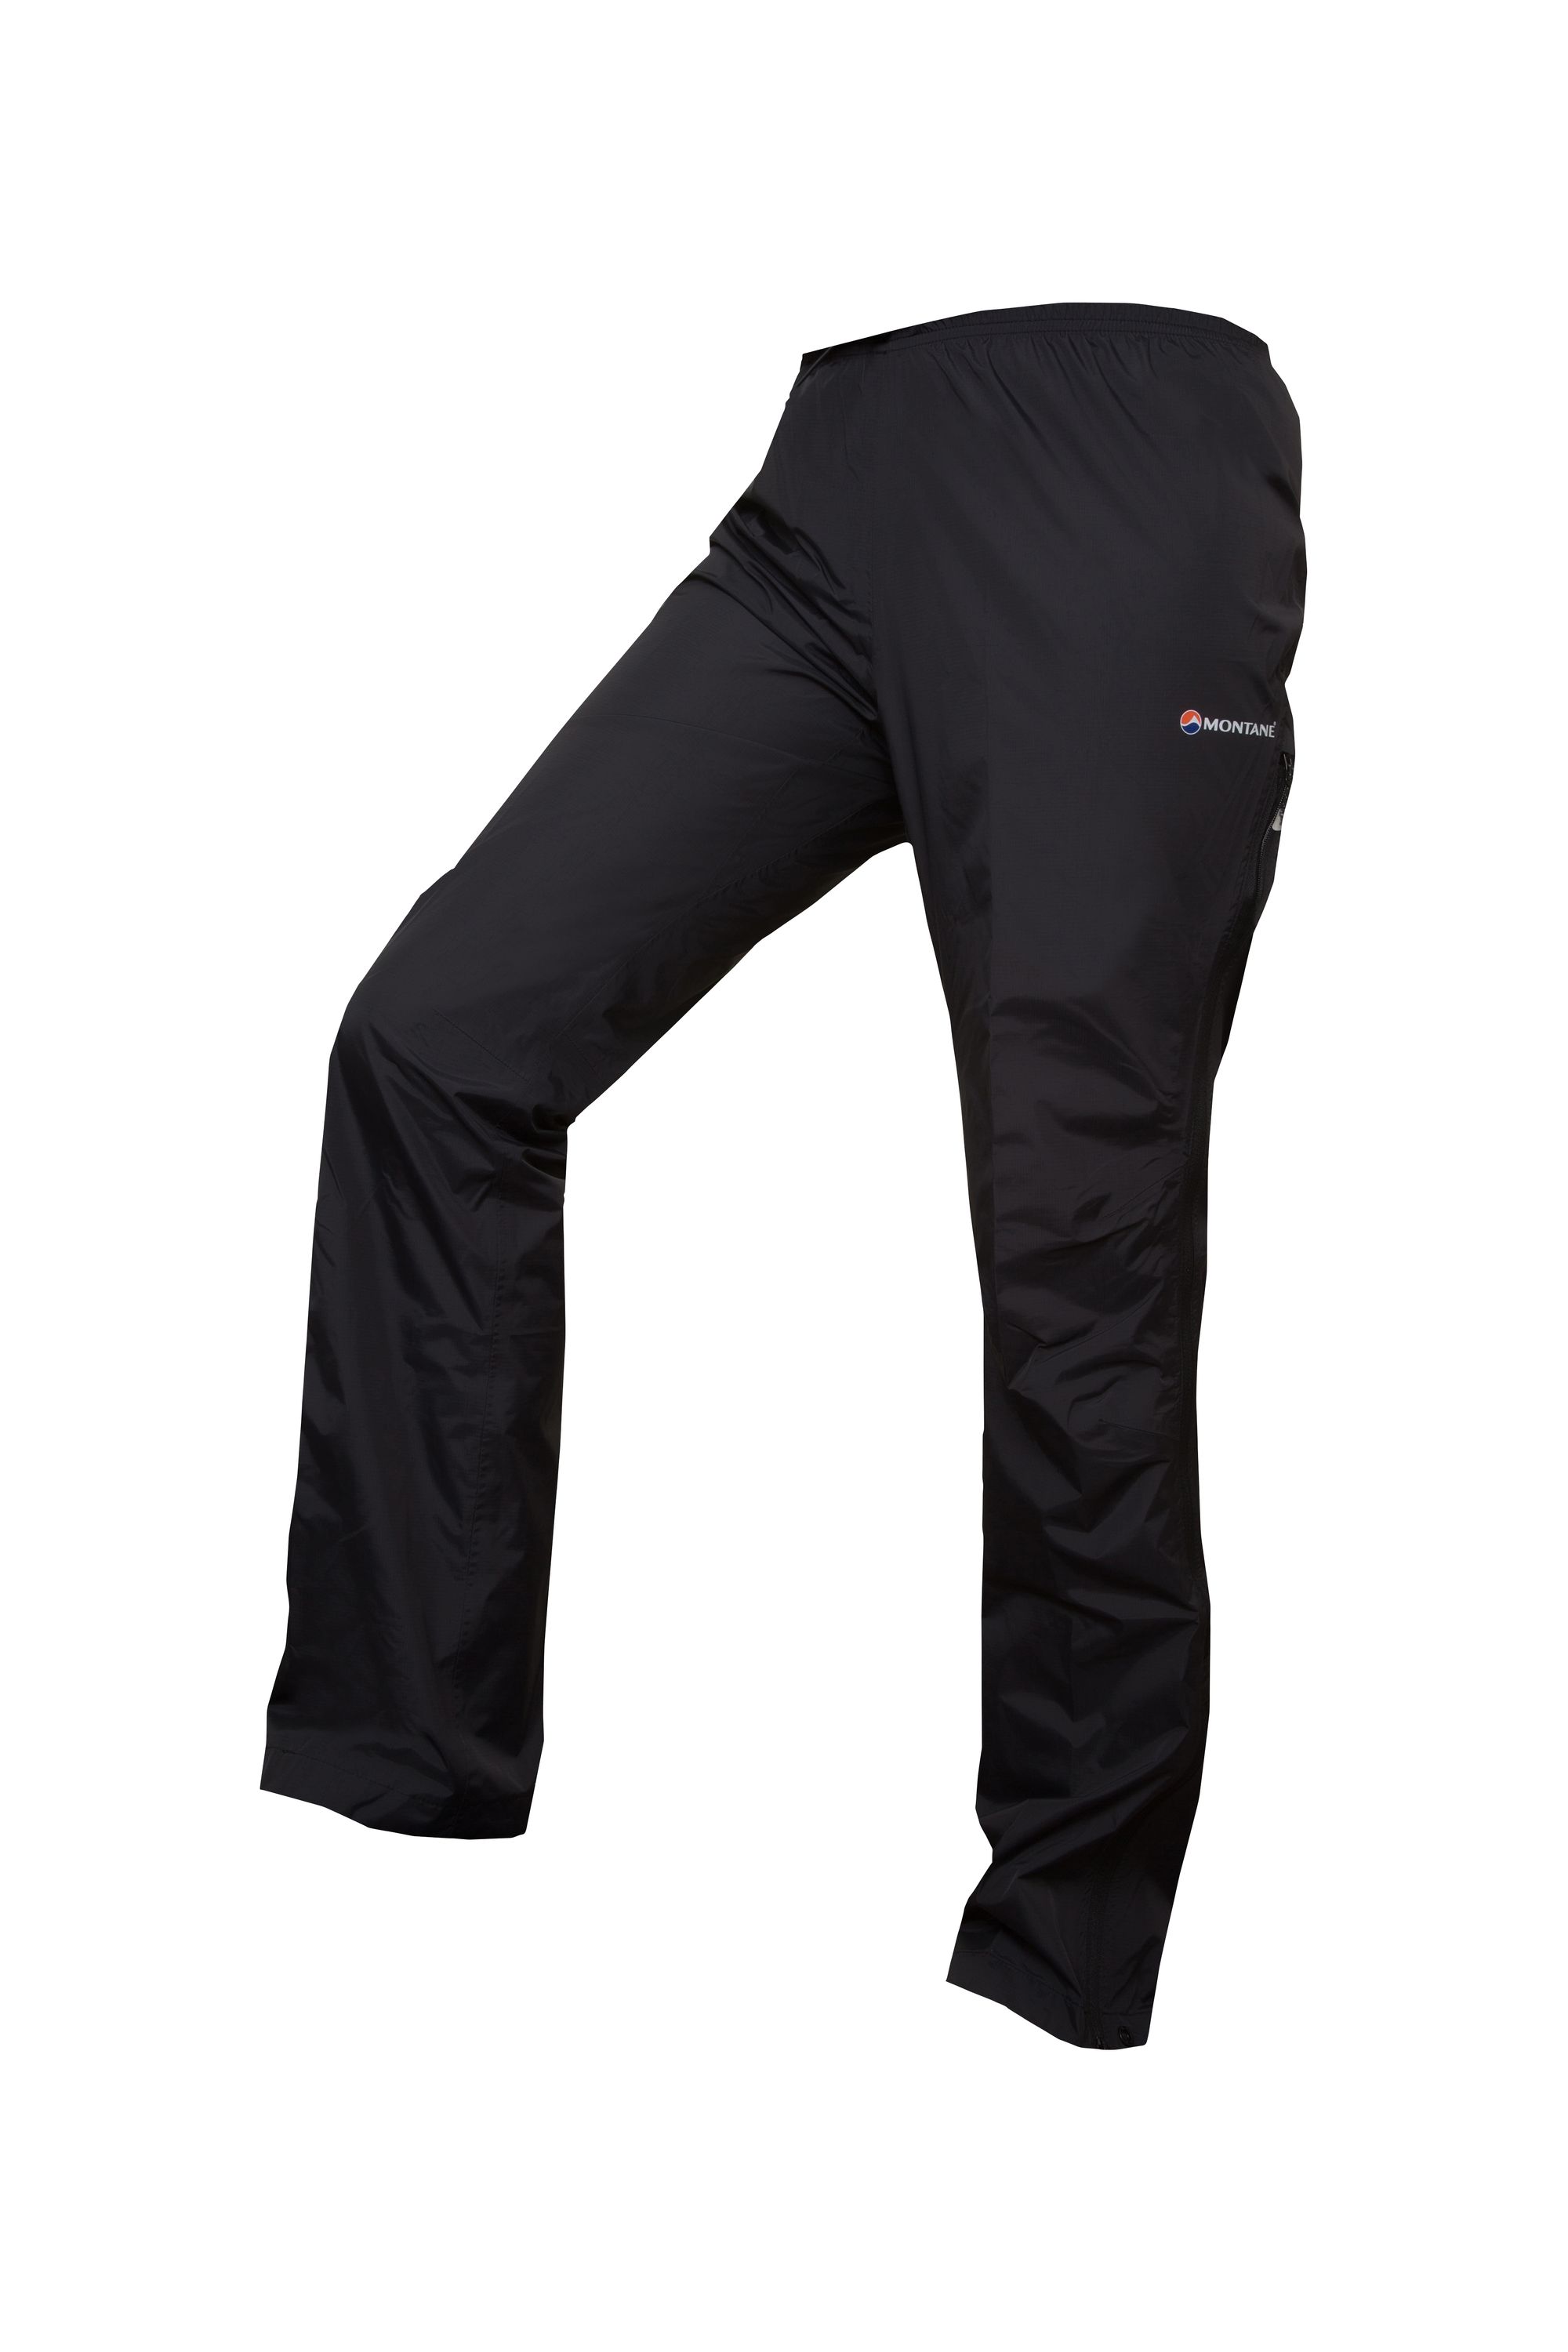 Montane FEM DYNAMO PANTS-REG LEG-BLACK-UK12/M dámské kalhoty černé